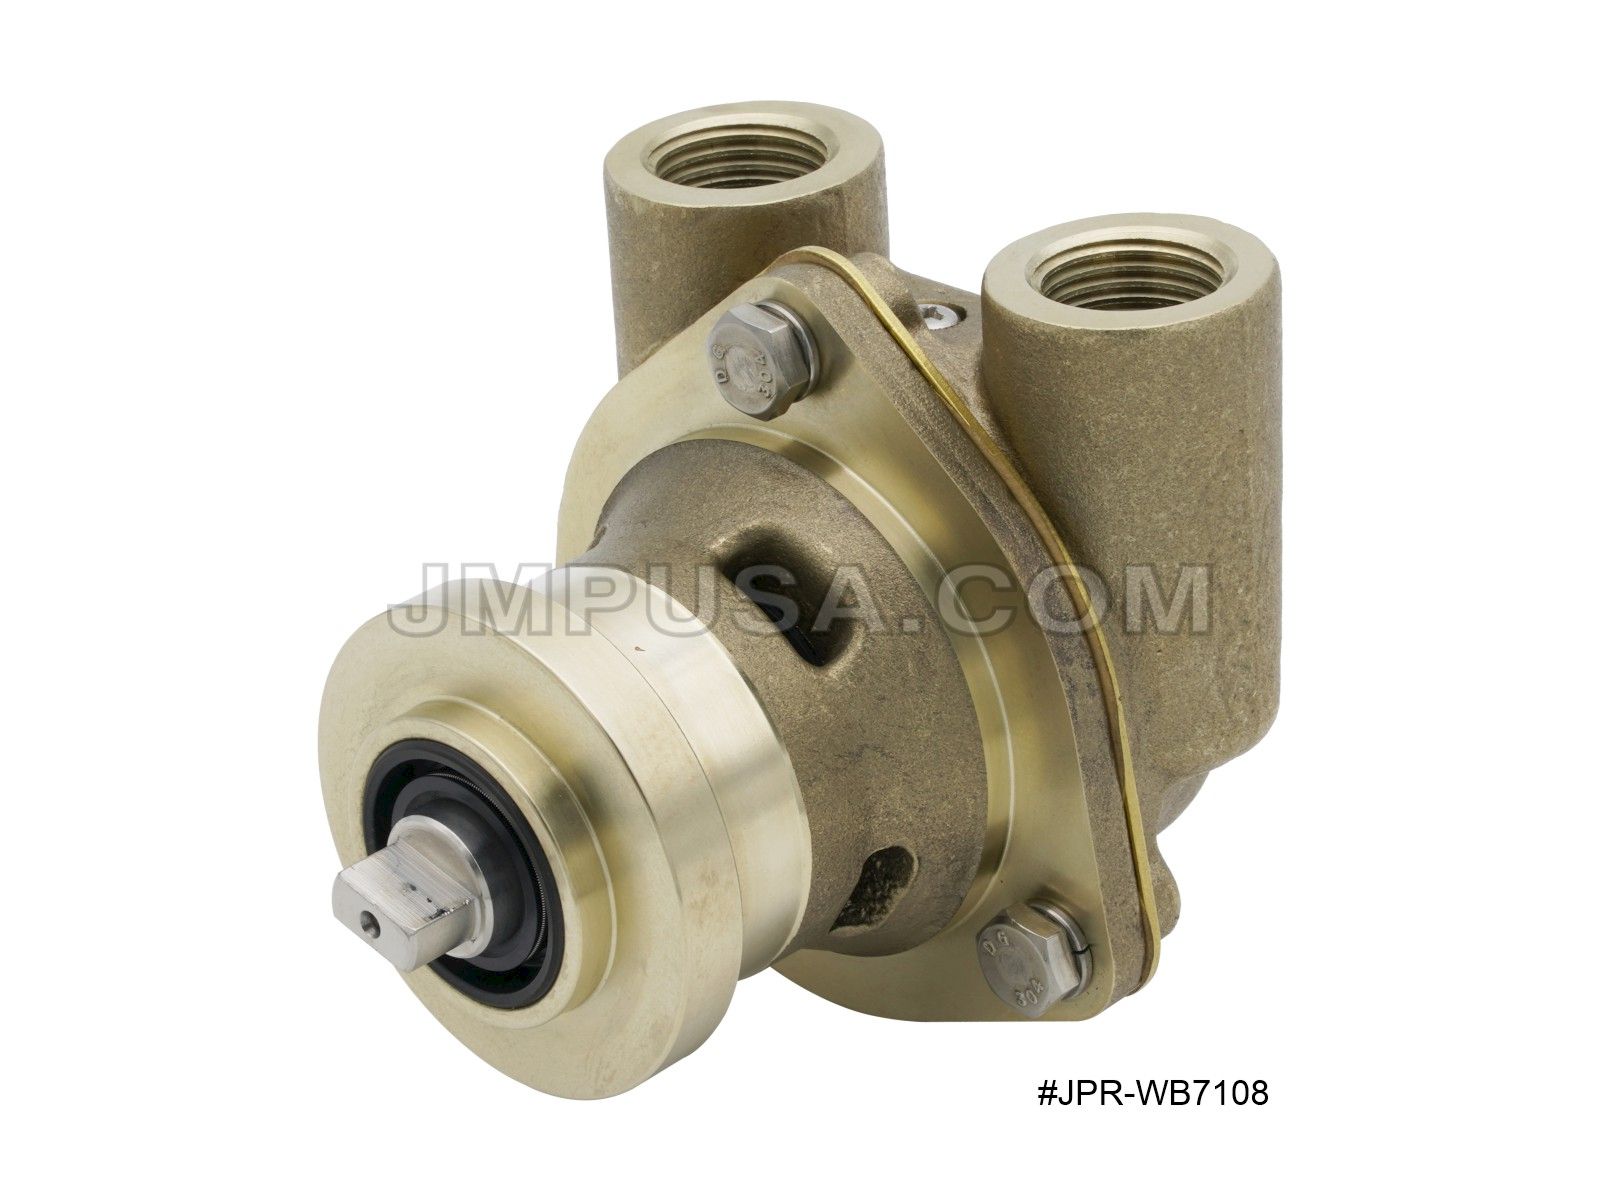 Westerbeke / Universal Seawater Pump 042175 /42175/ 57866 Sherwood G908 Replacement JPR-WB7108